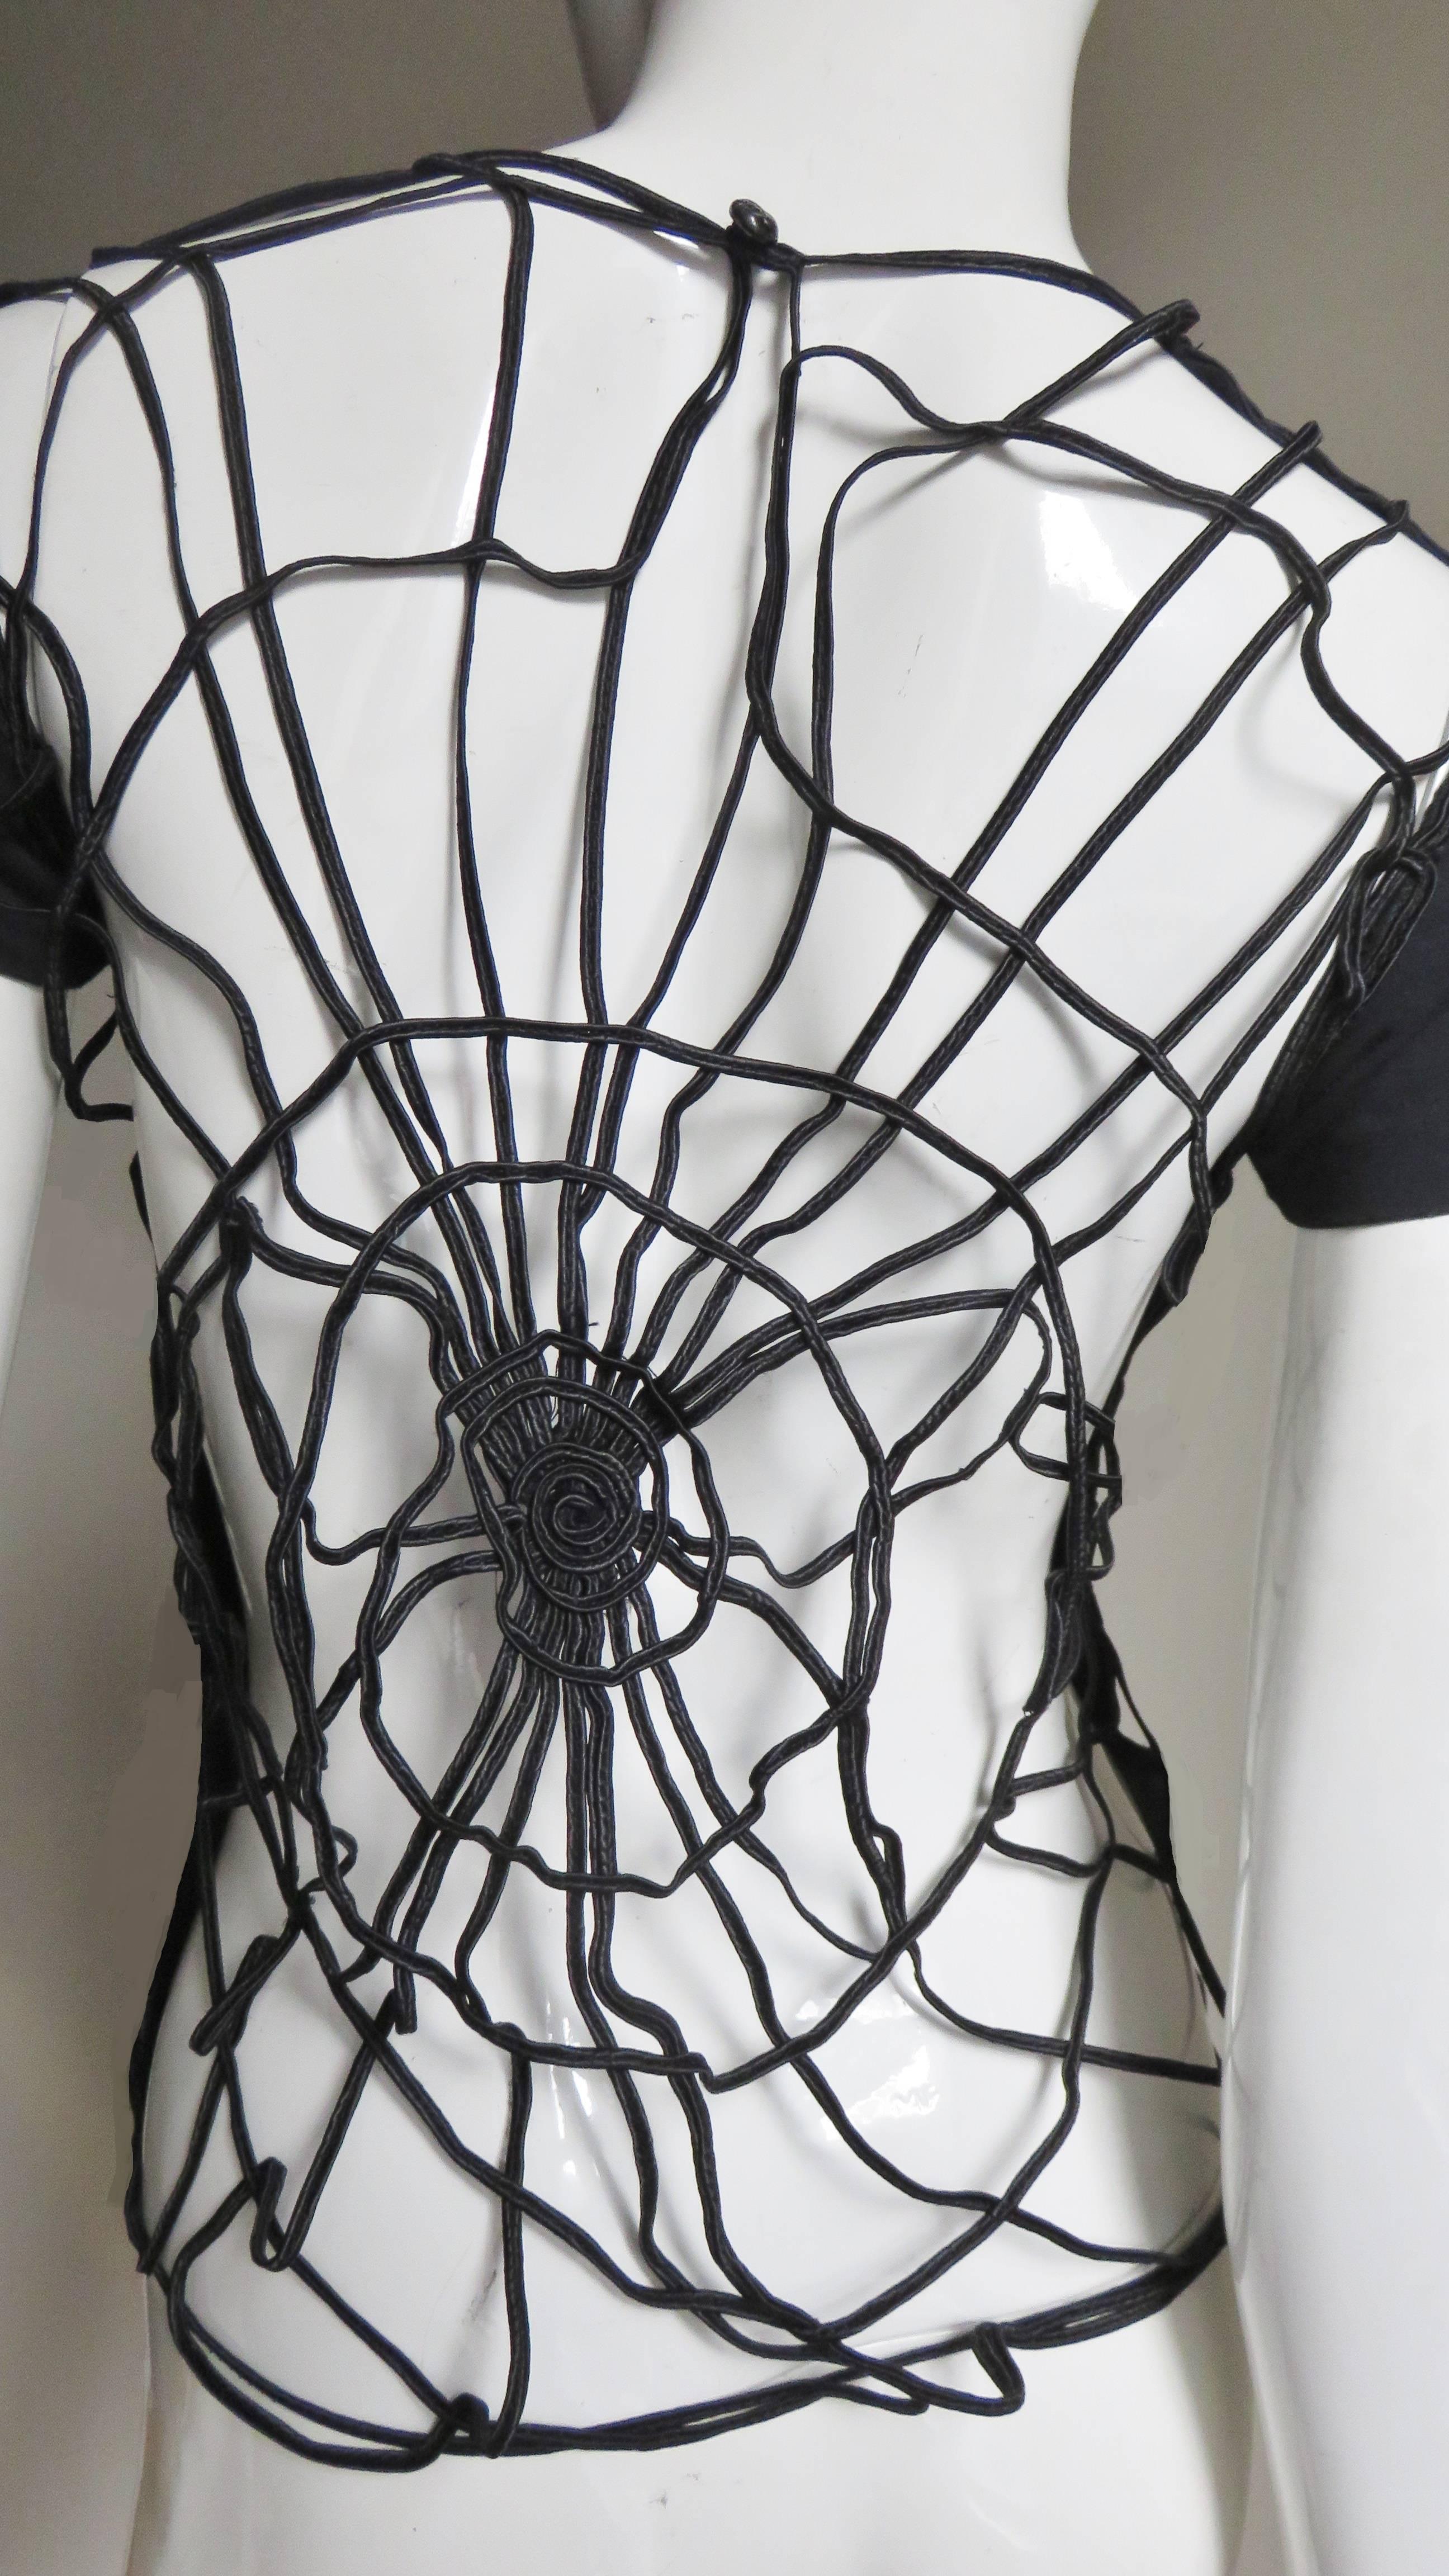 spider web back shirt